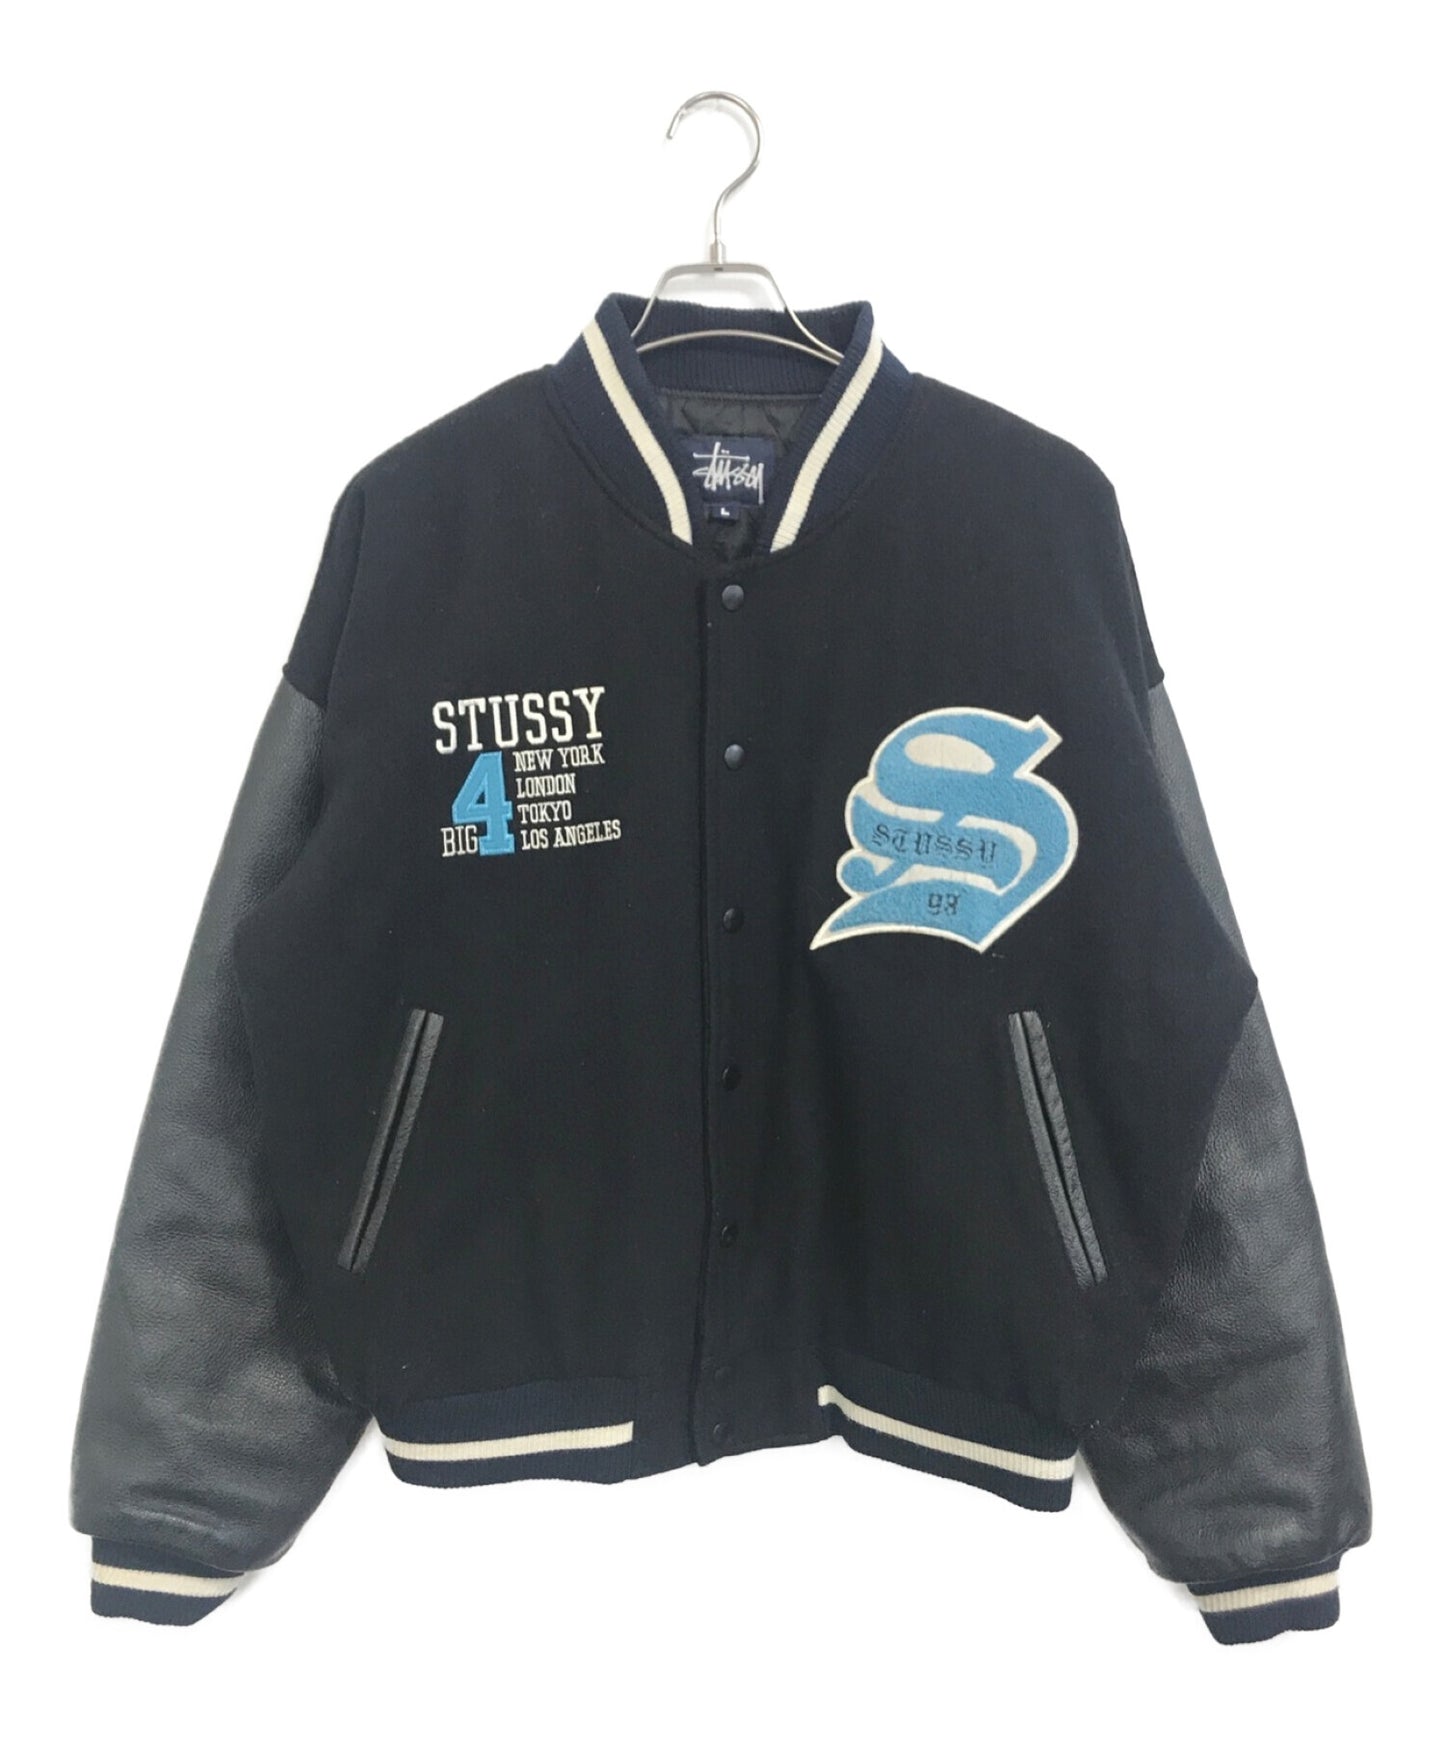 stussy BIG4 stadium jacket | Archive Factory